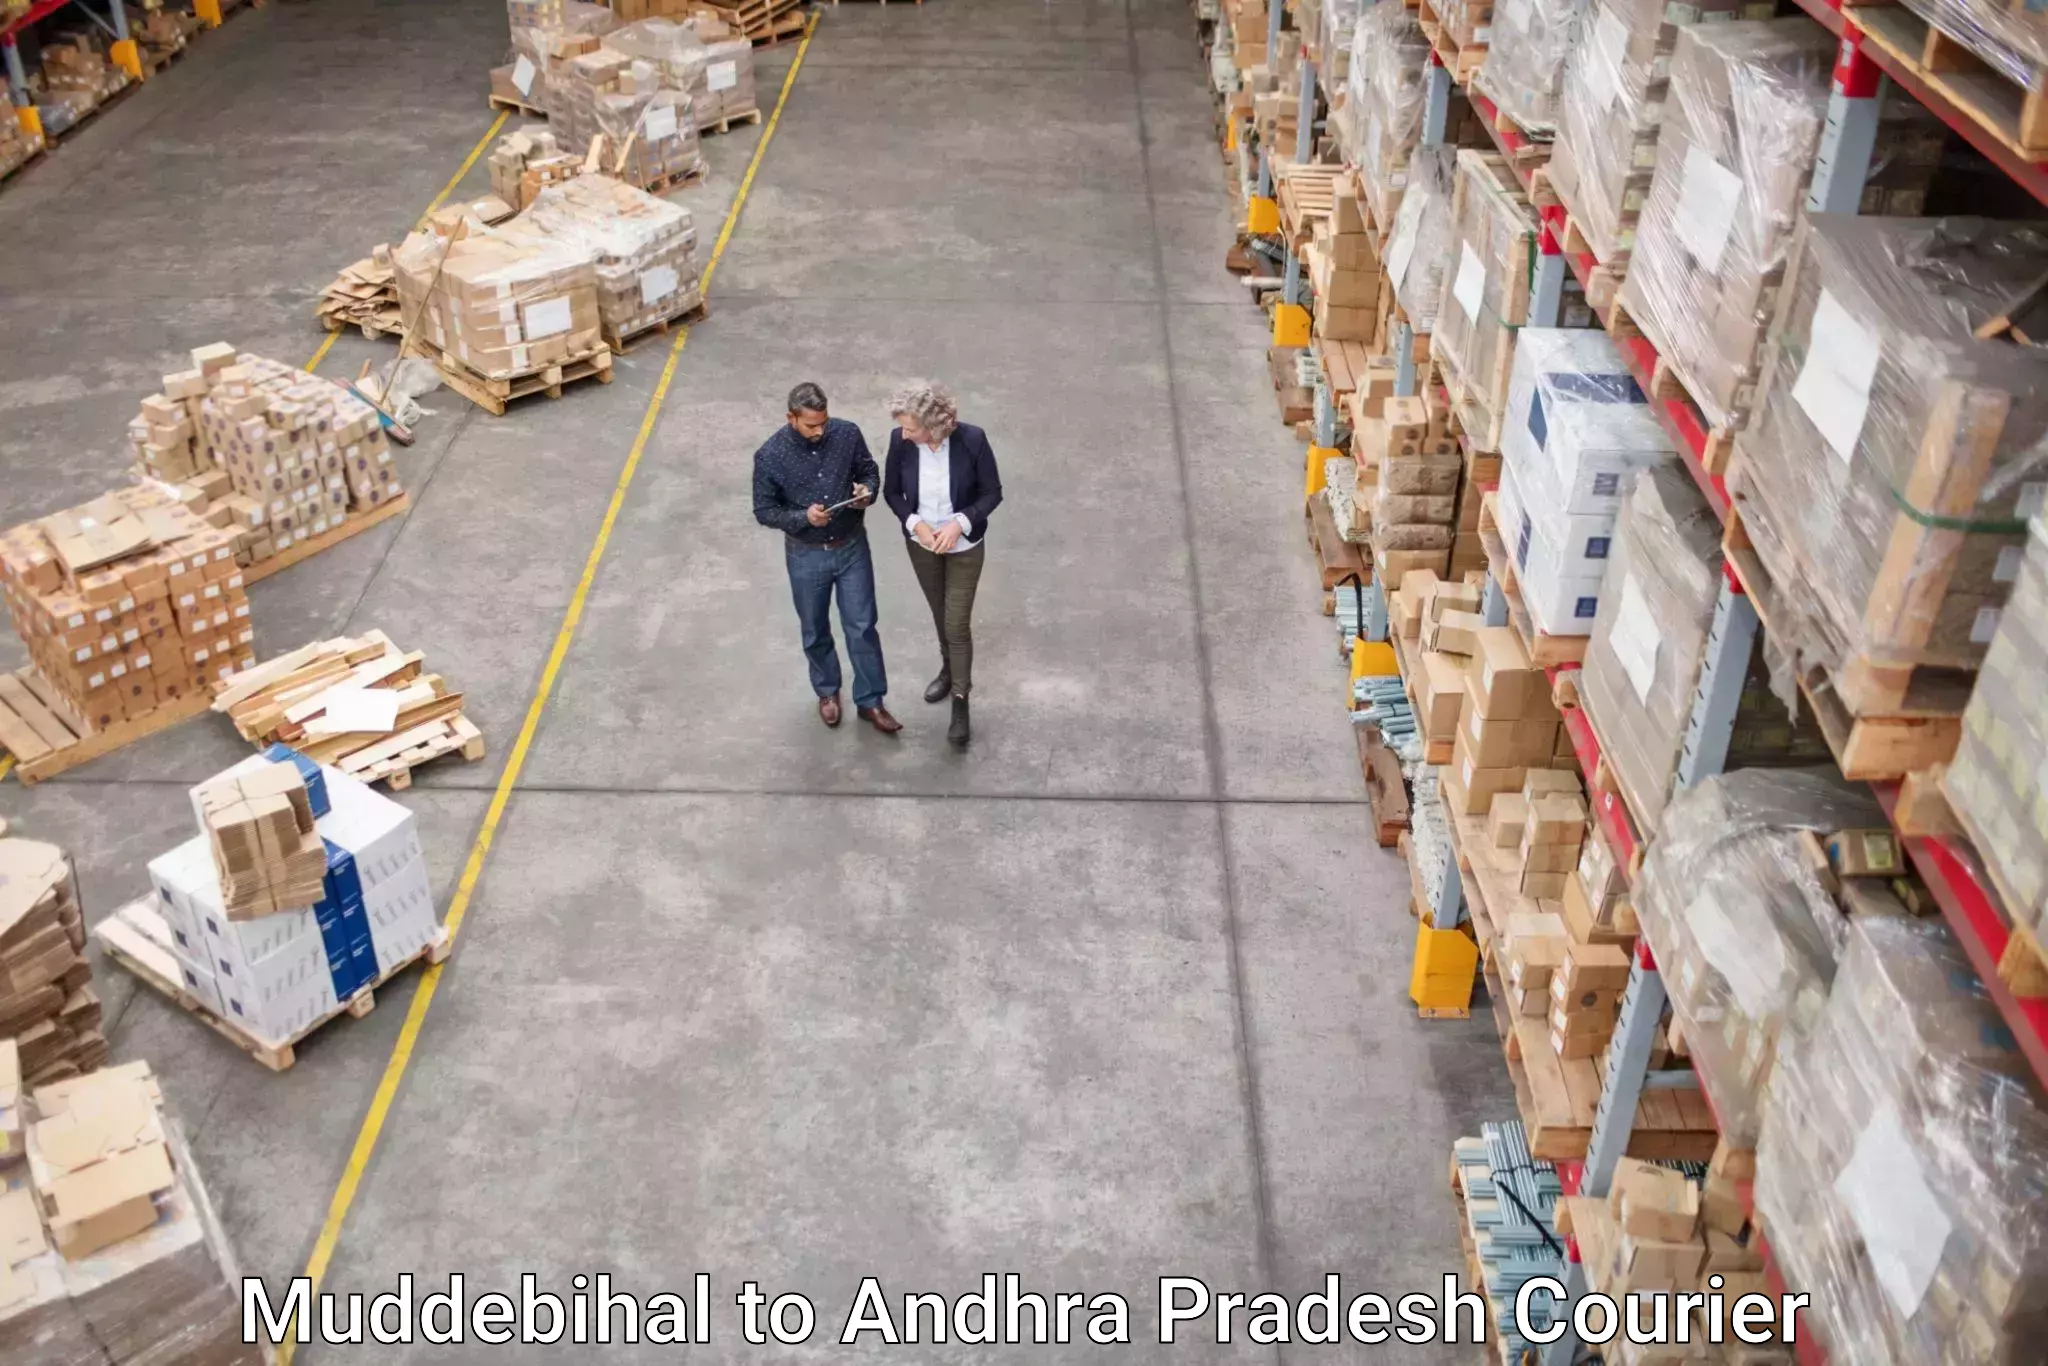 Automated parcel services Muddebihal to Ichchapuram